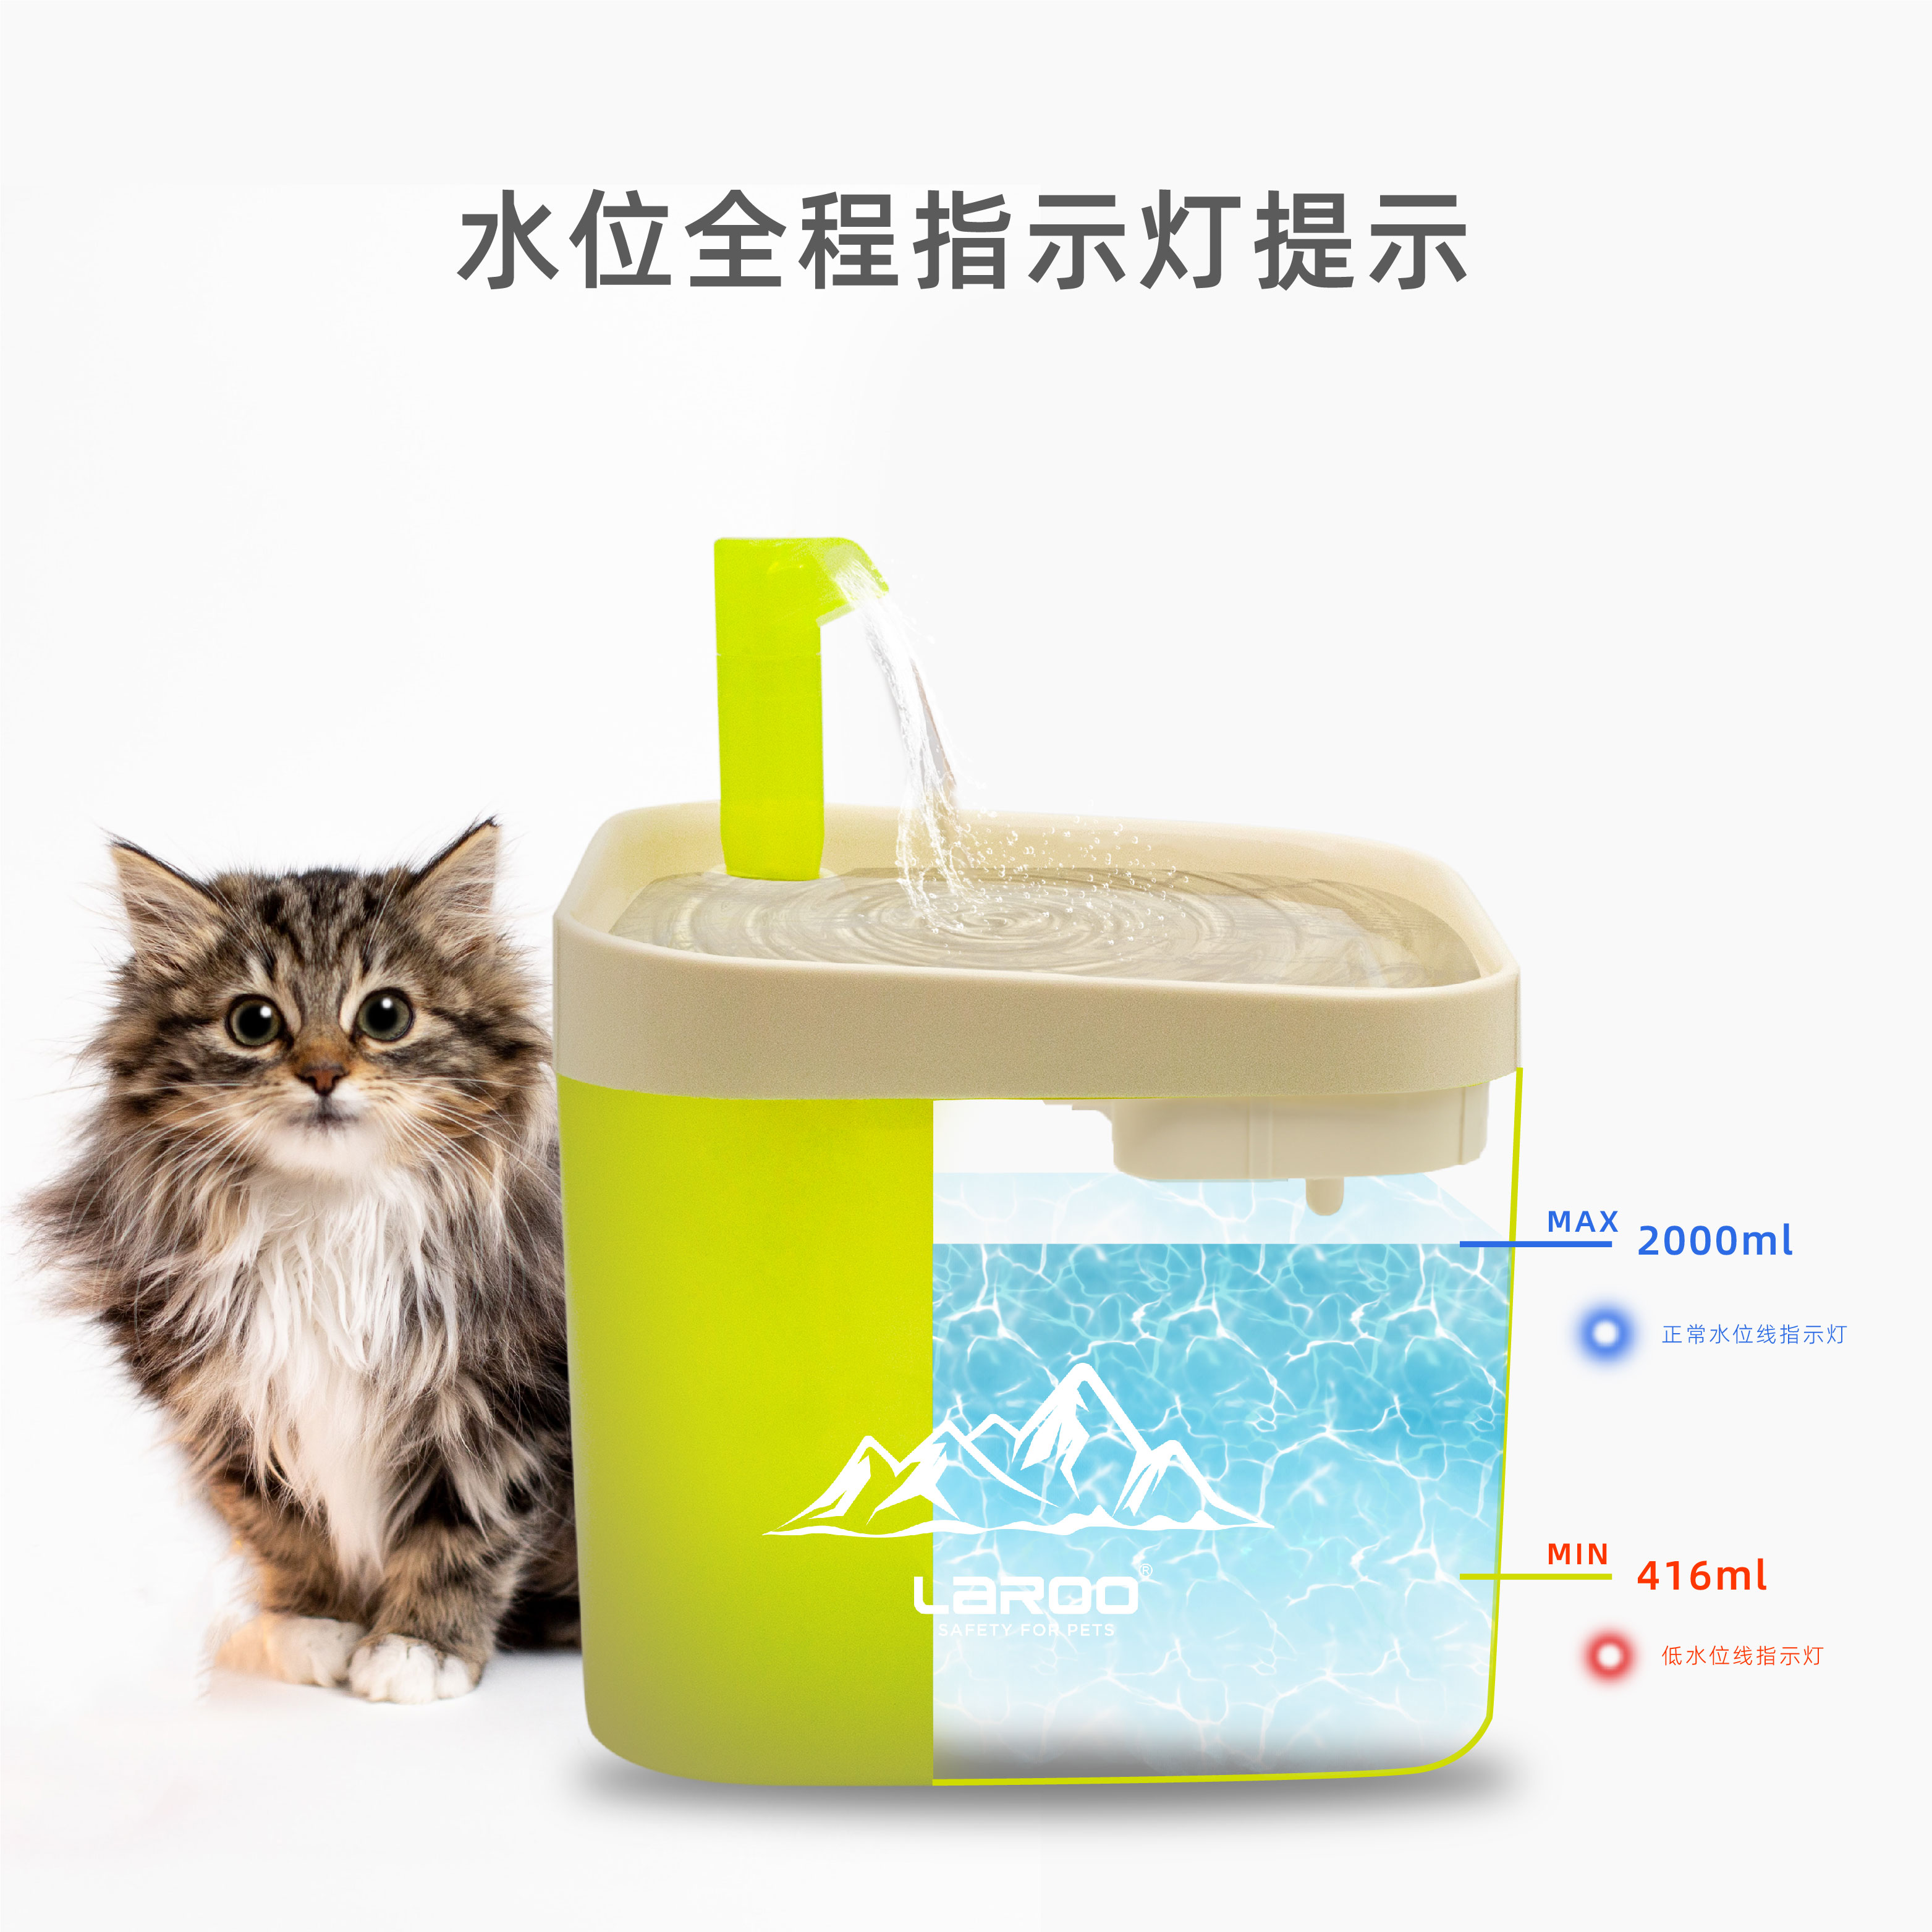 laroo萊諾寵物貓狗通用智能循環流動水靜音濾芯果凍飲水機